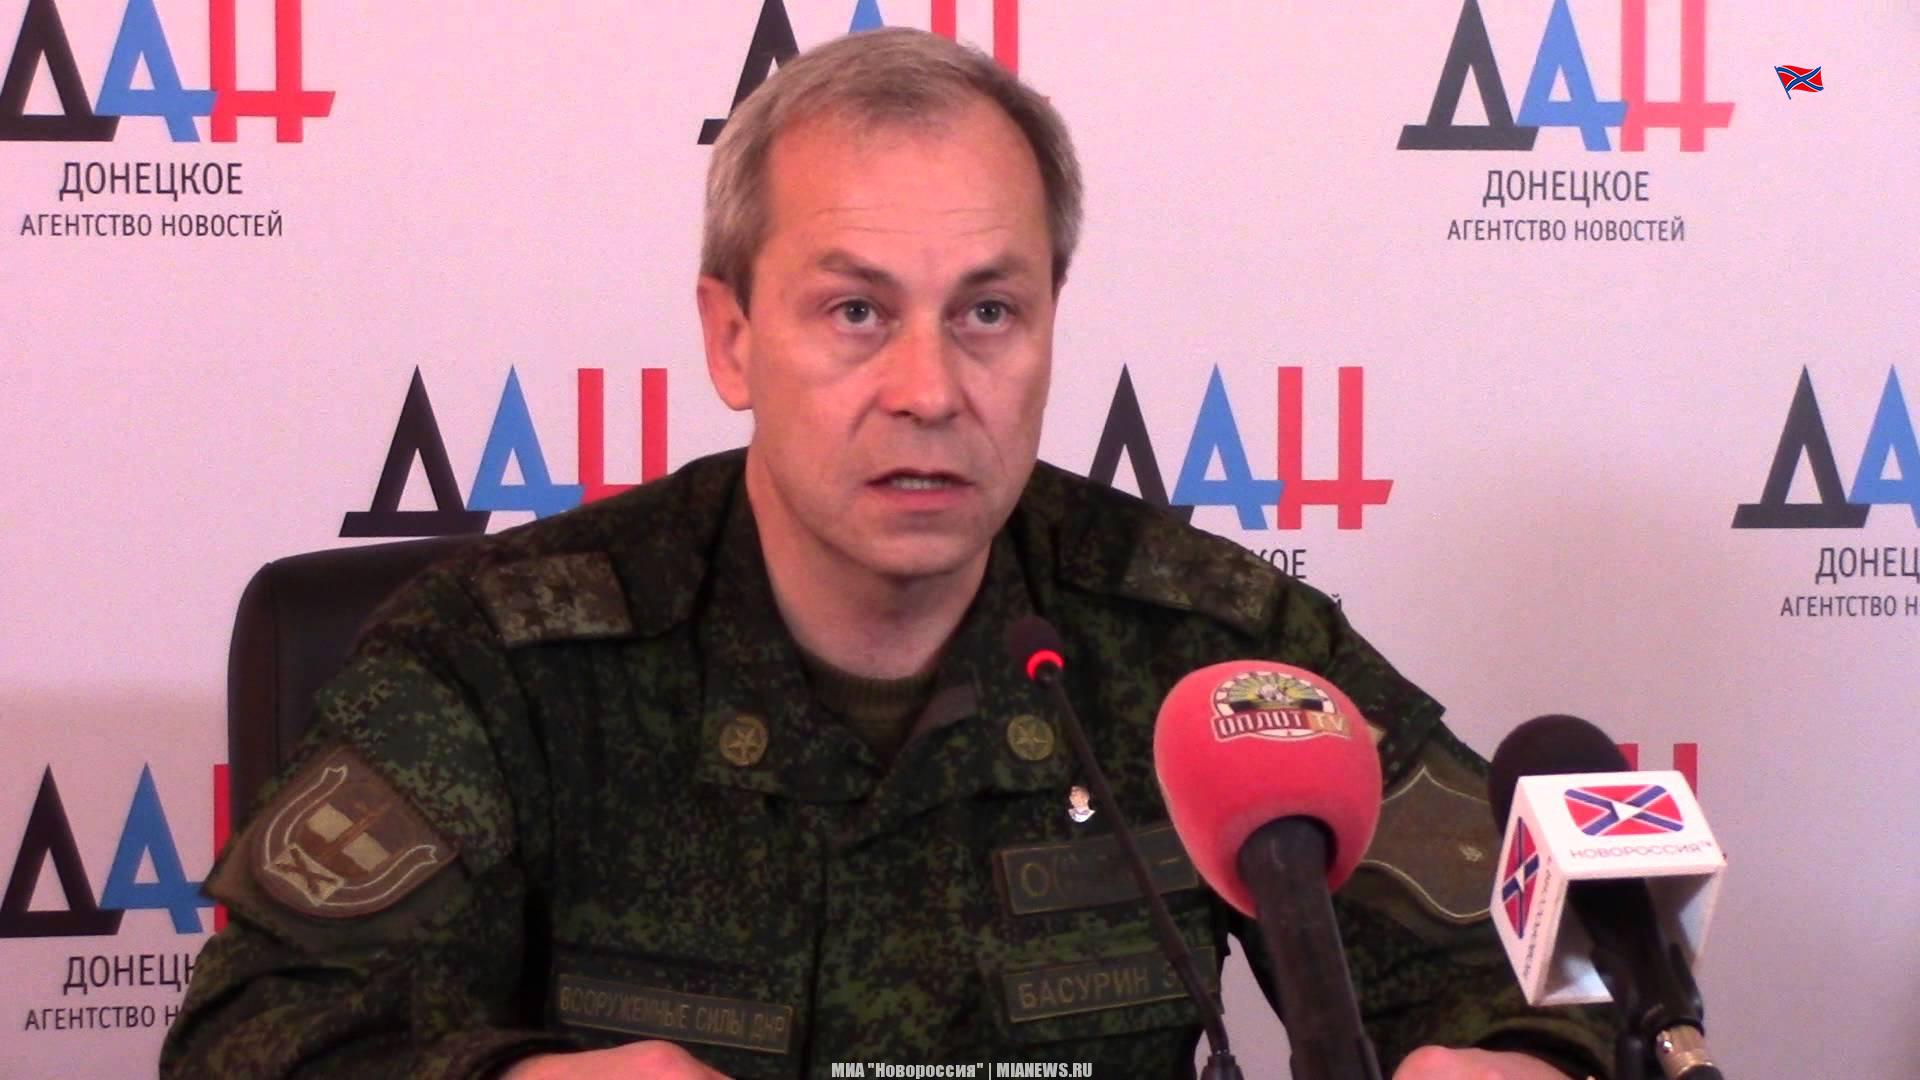 Сводка военной ситуации в Донецкой Народной Республики за 18 марта